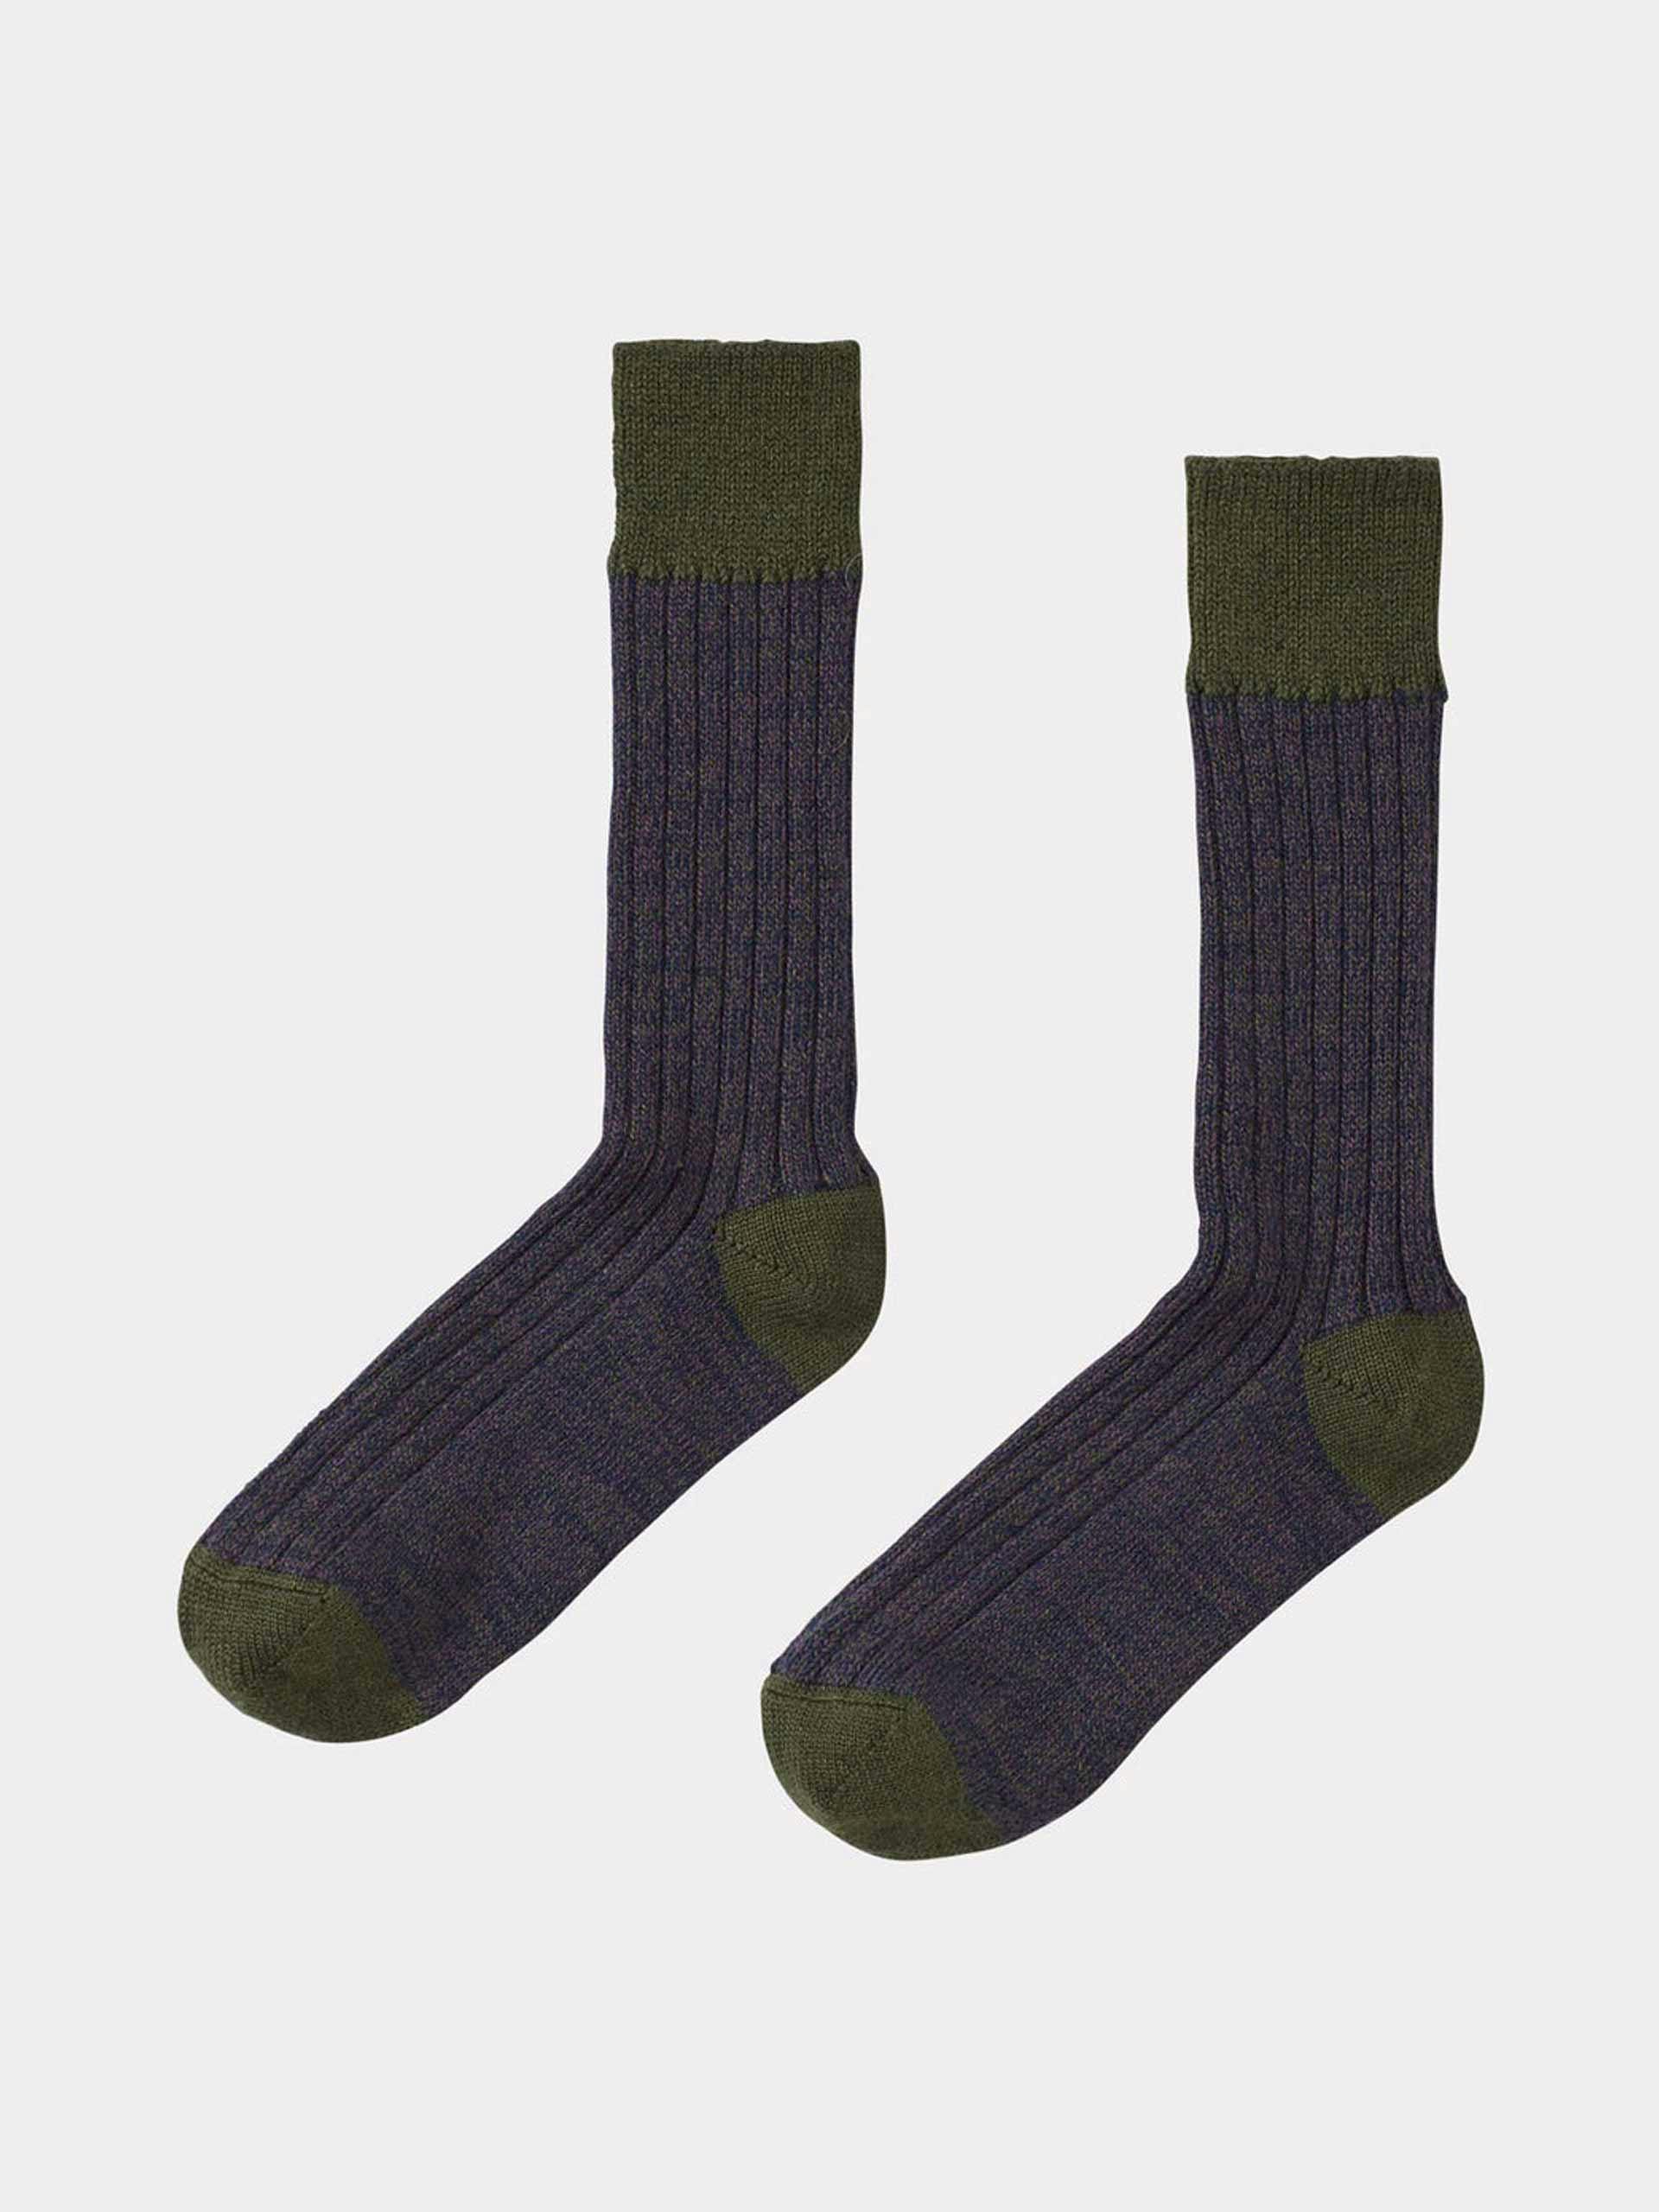 Firth socks - spruce